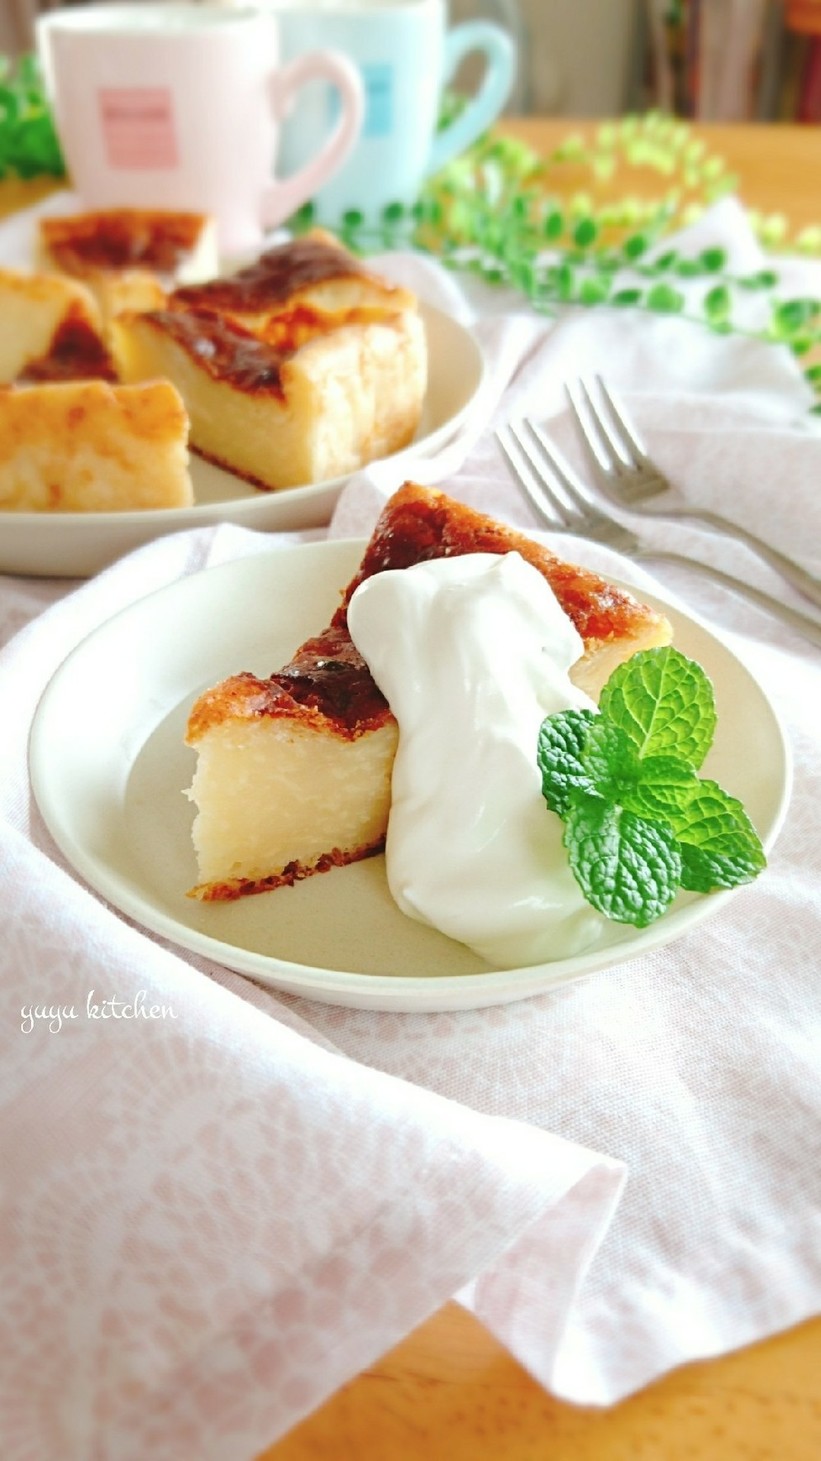 カルピスとお豆腐のベイクドチーズケーキ。の画像